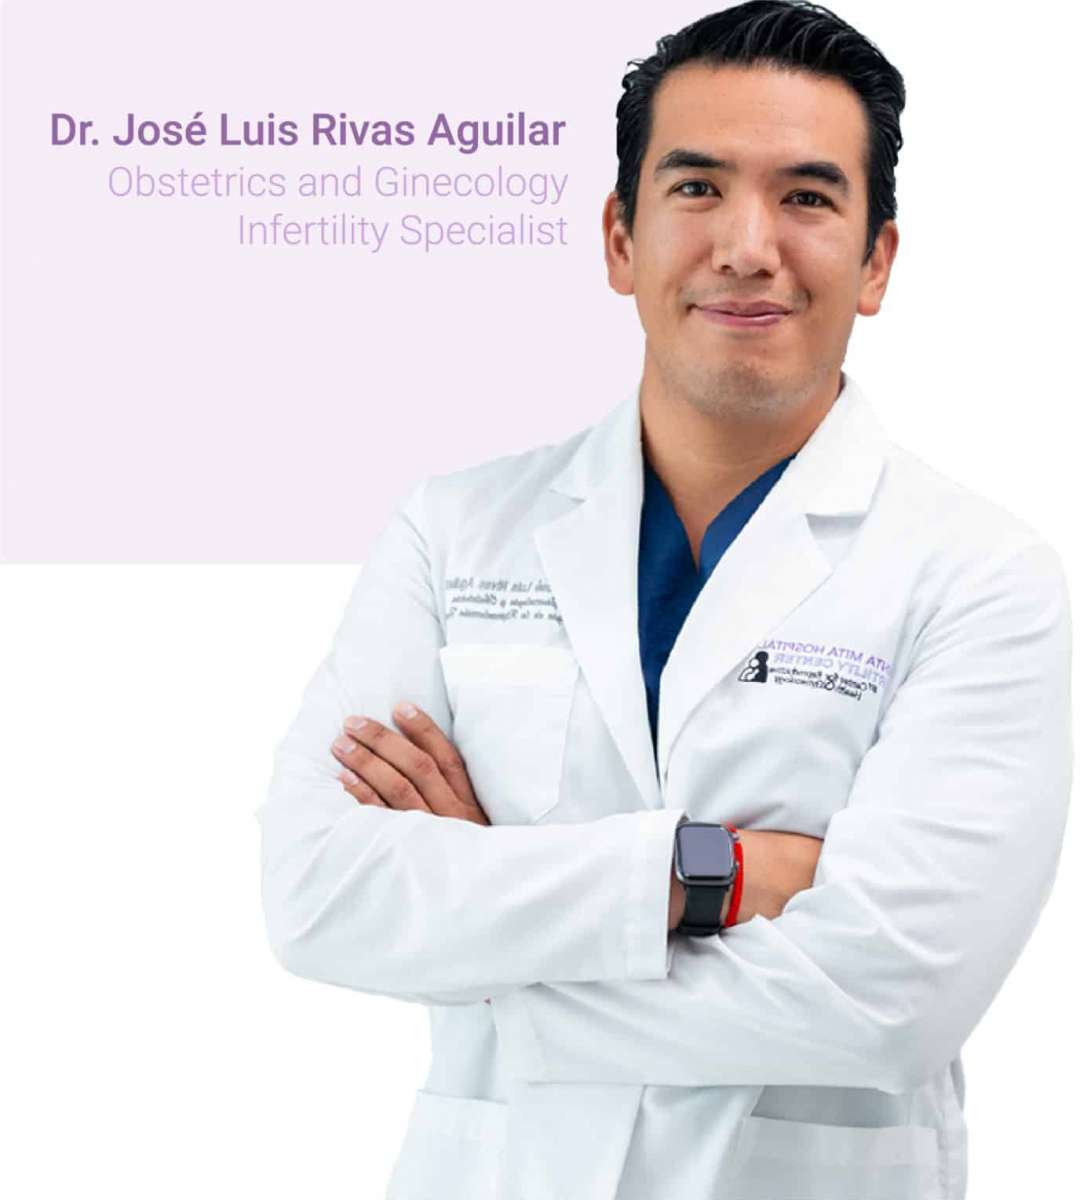 Dr. José Luis Rivas Aguilar